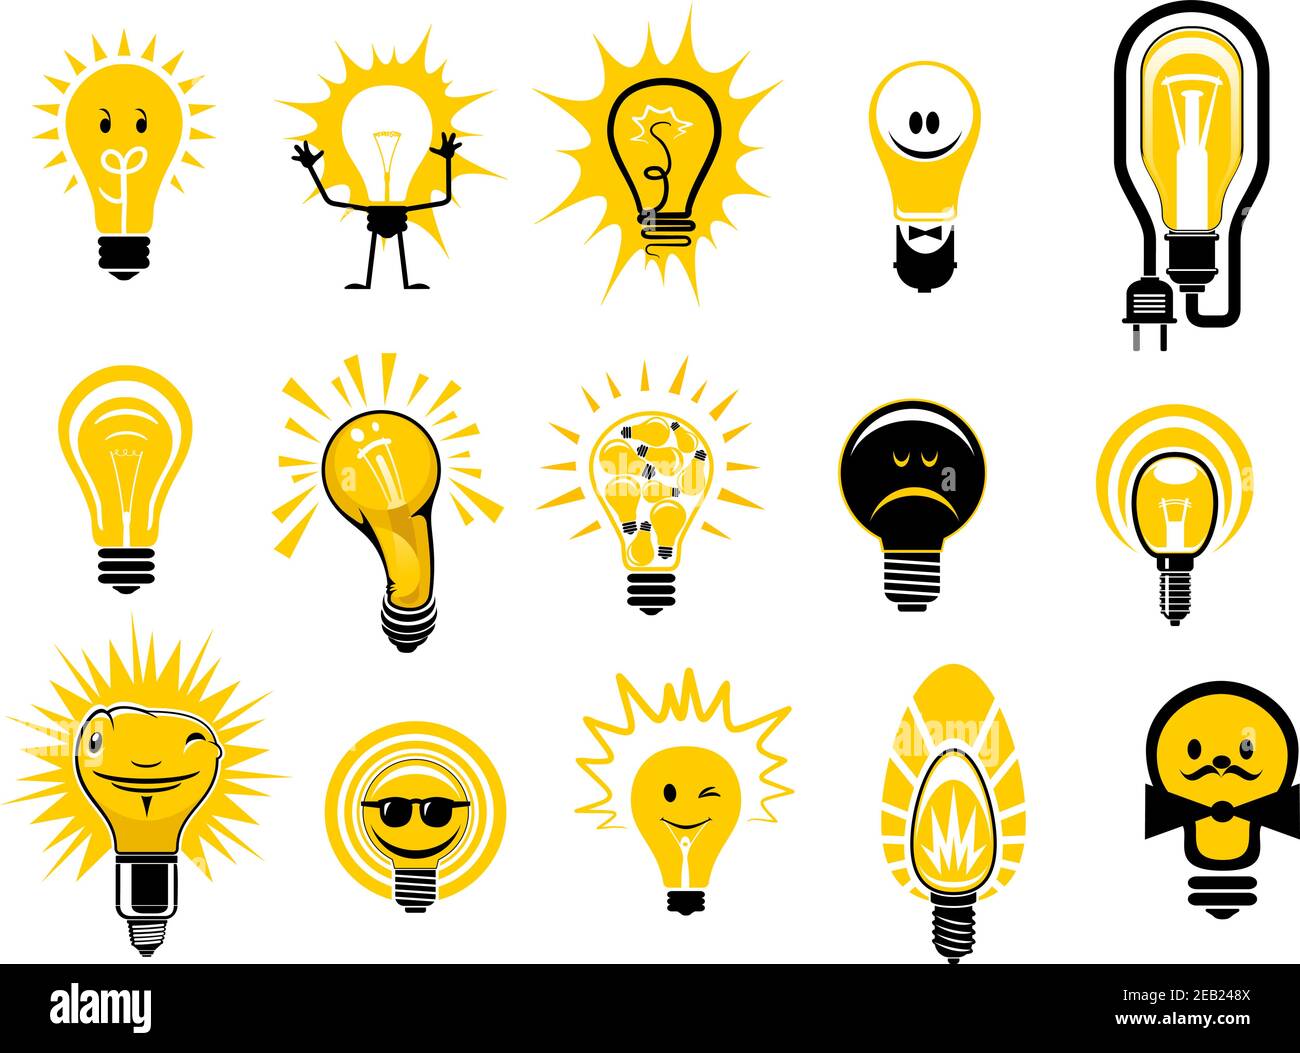 Ampoules lumineuses icônes de style dessin animé montrant des lampes à filament électrique avec lumière jaune vif, isolé sur fond blanc, pour l'idée créative o Illustration de Vecteur